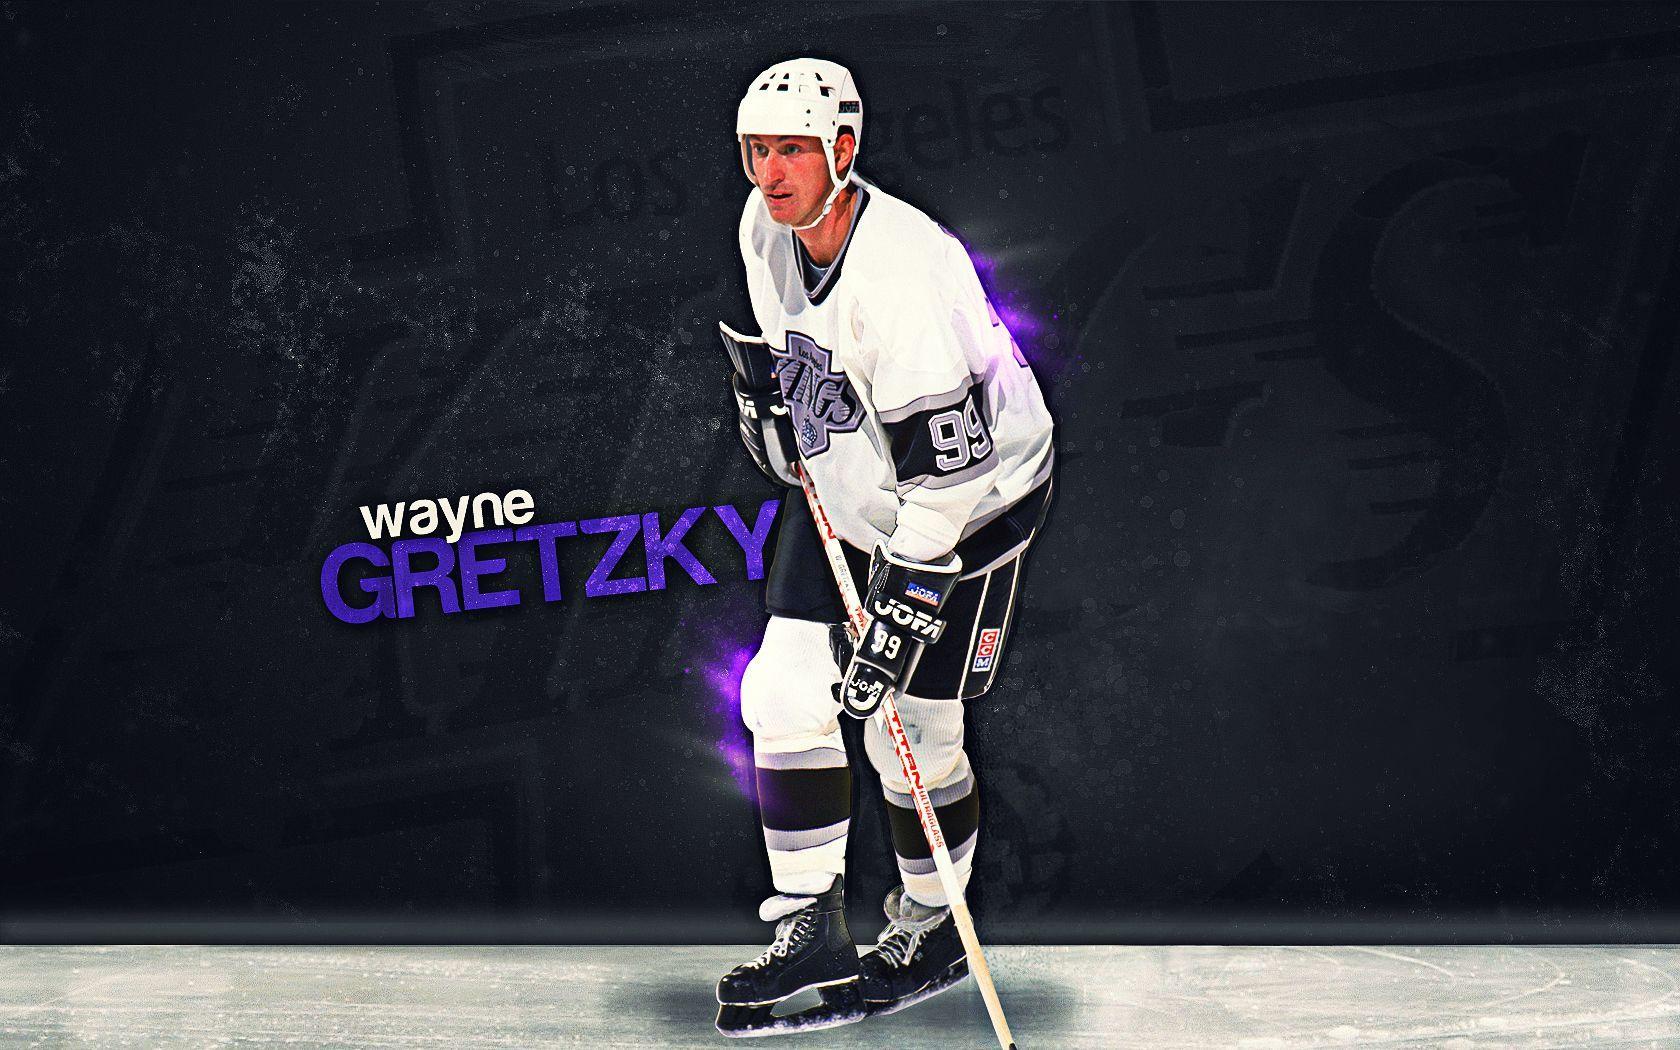 Wayne Gretzky Wallpaper Group. HD Wallpaper. Wayne